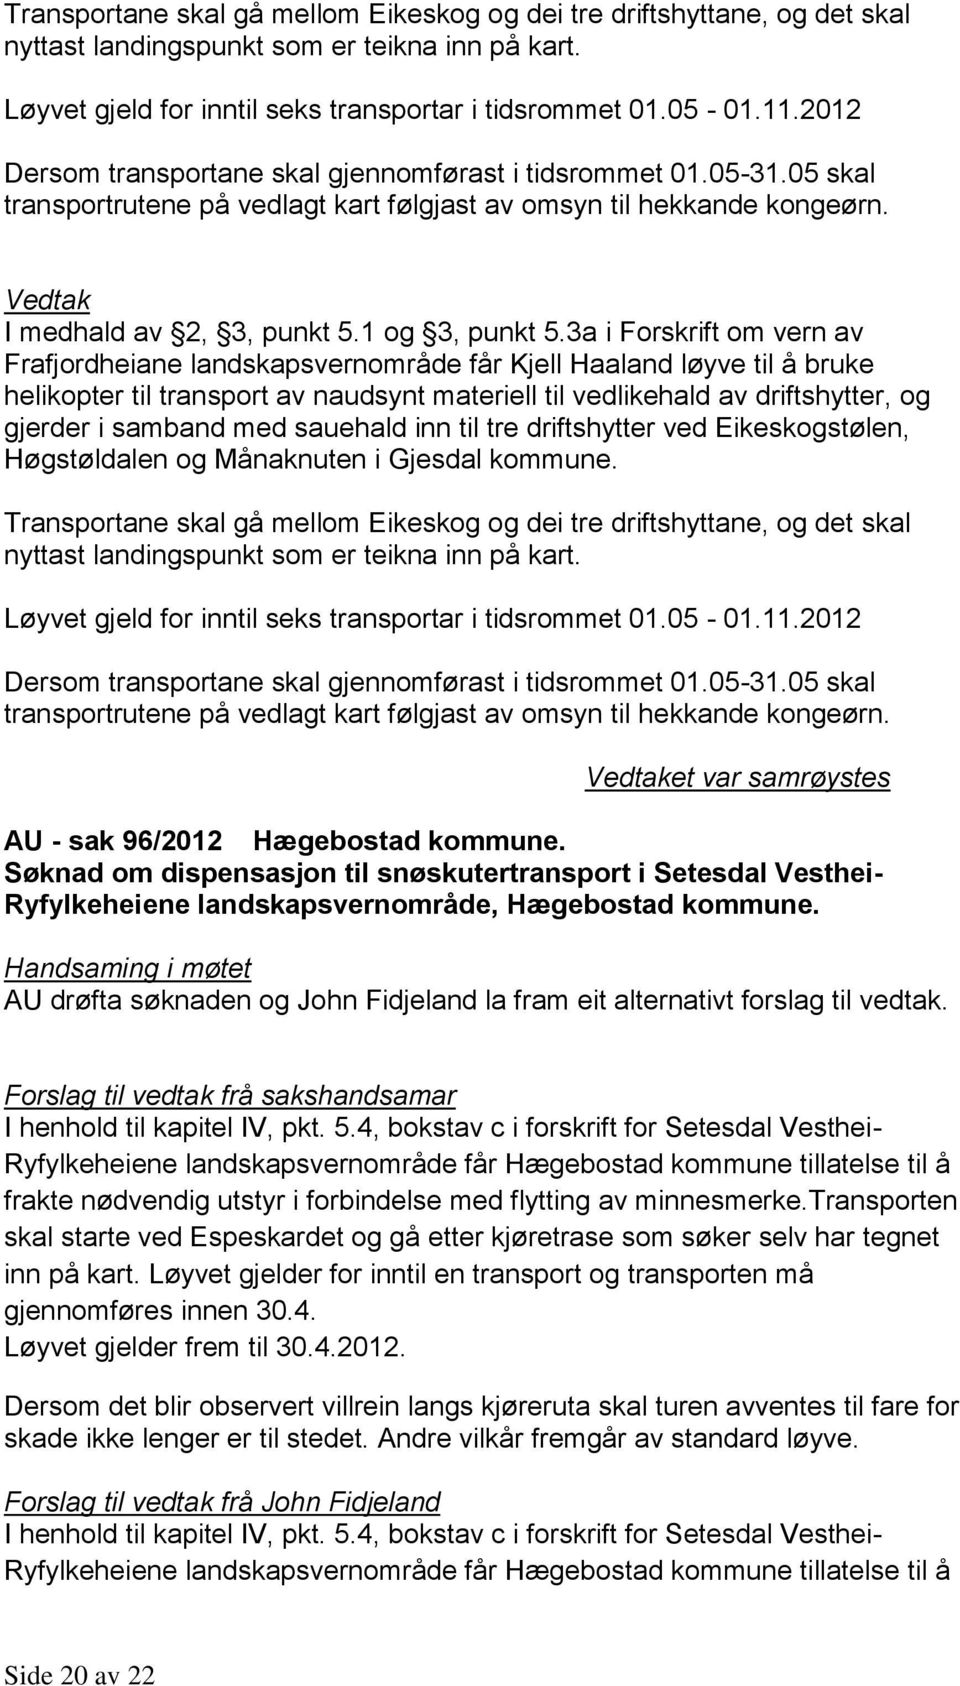 3a i Forskrift om vern av Frafjordheiane landskapsvernområde får Kjell Haaland løyve til å bruke helikopter til transport av naudsynt materiell til vedlikehald av driftshytter, og gjerder i samband